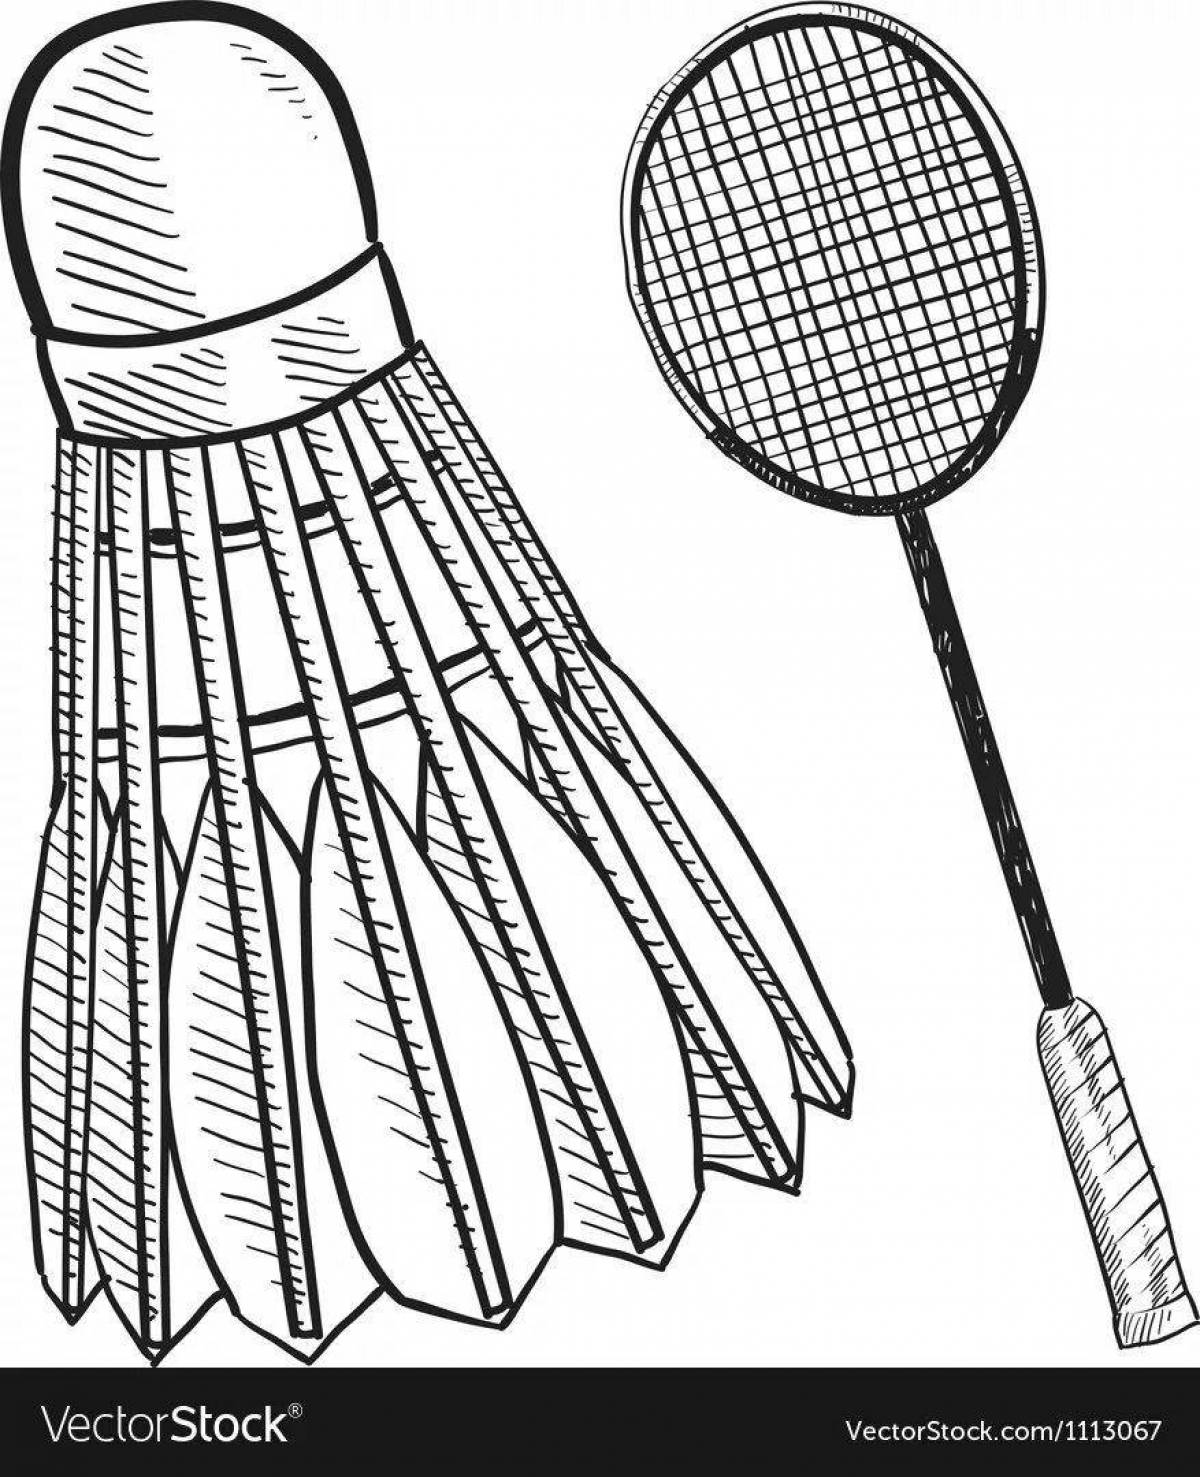 Adorable badminton coloring page